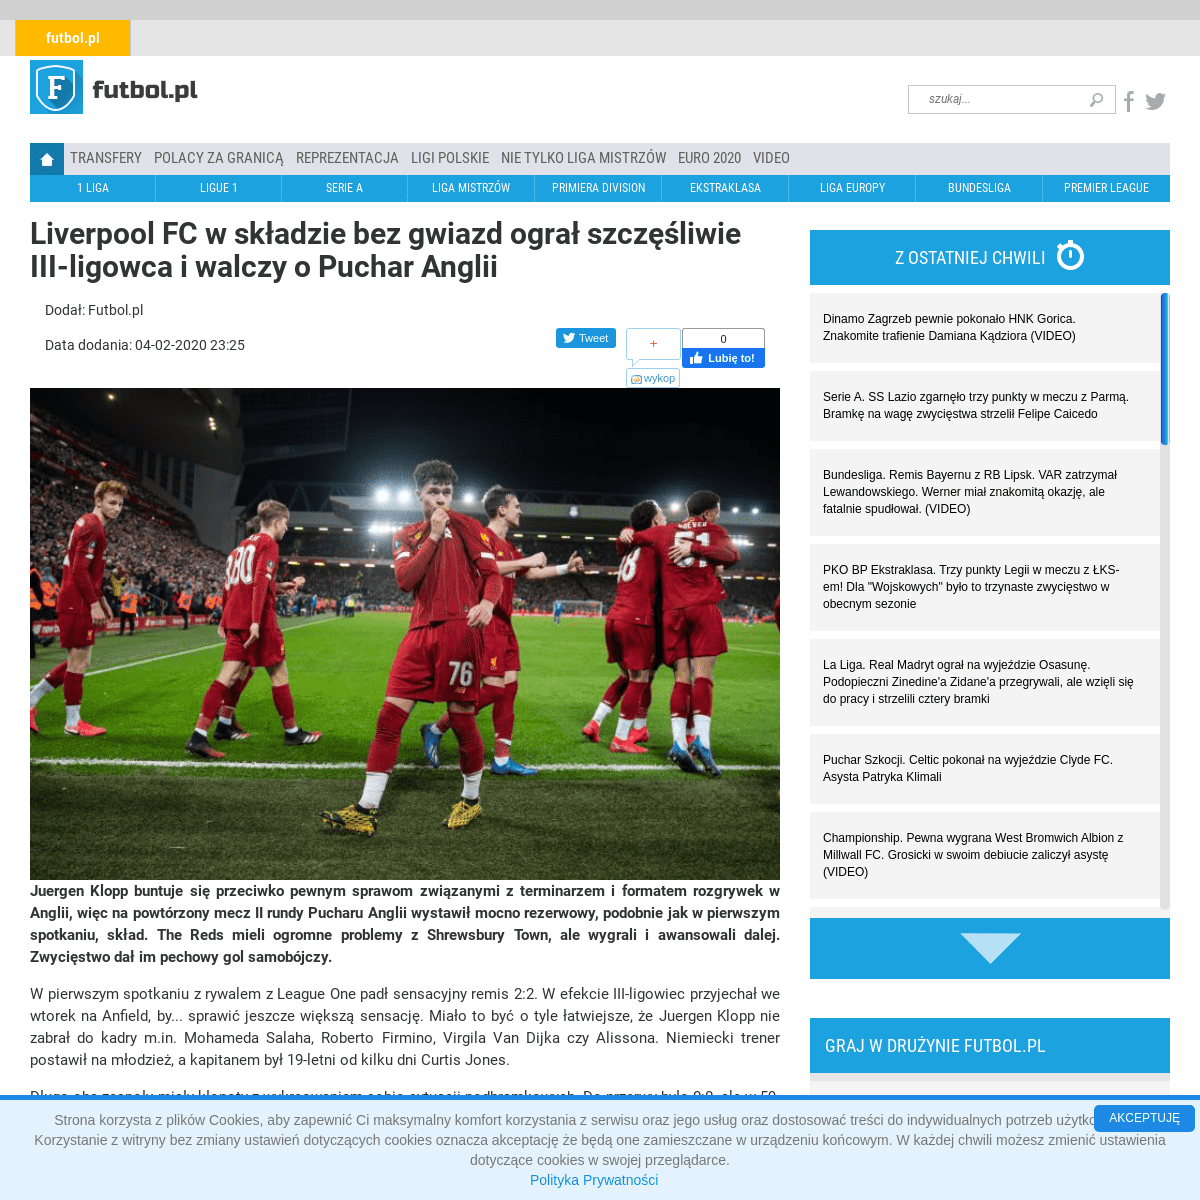 A complete backup of futbol.pl/news/550832_Liverpool_FC_w_skladzie_bez_gwiazd_ogral_szczesliwie_III-ligowca_i_walczy_o_Puchar_An